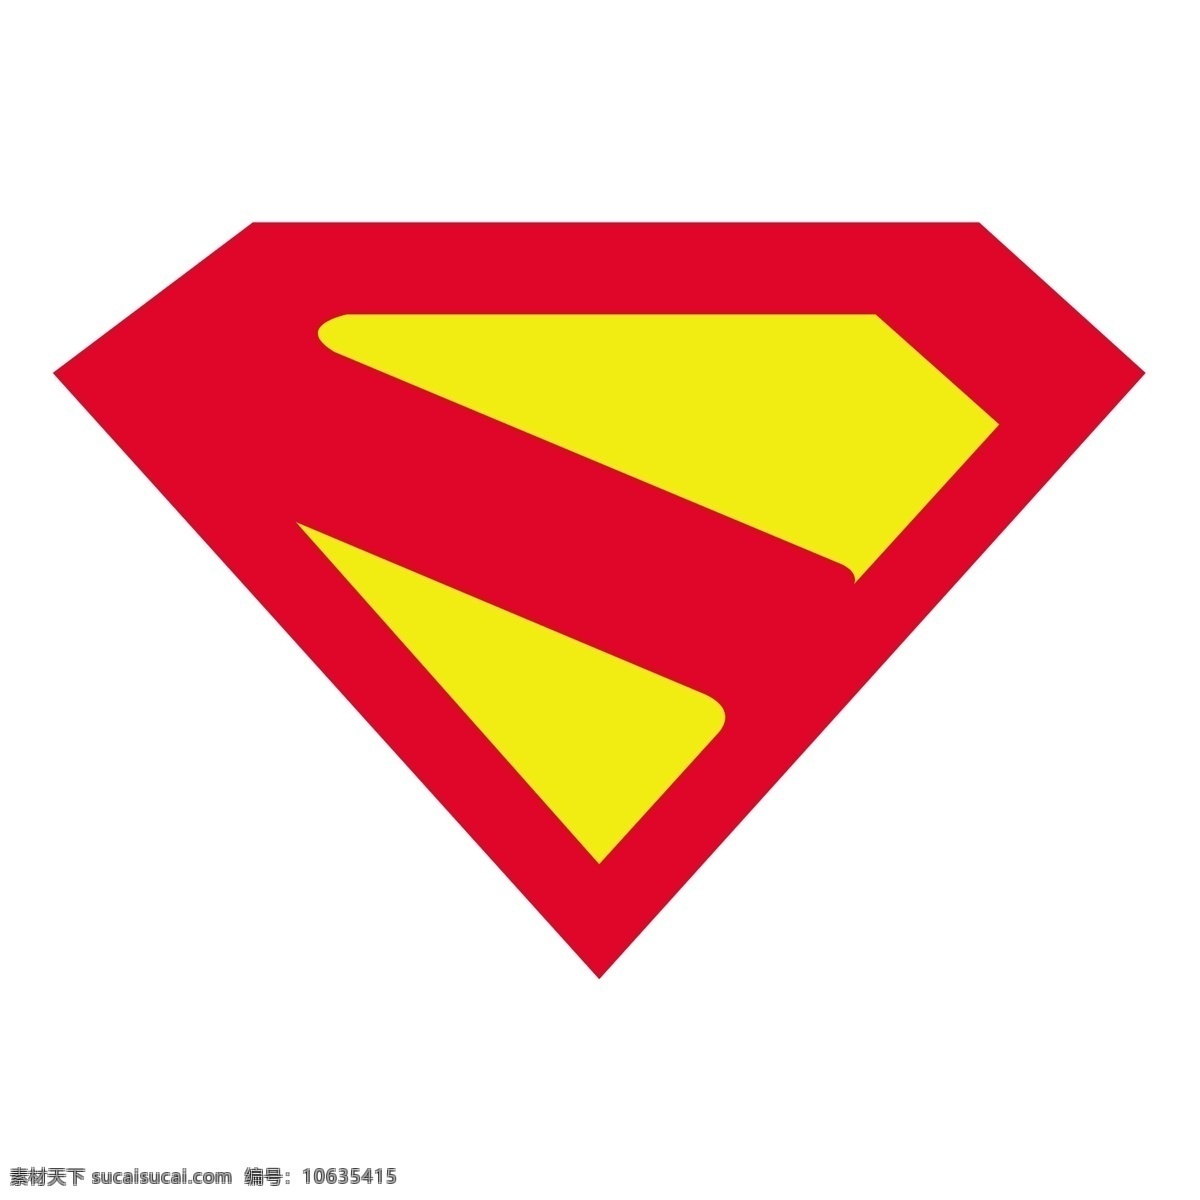 超人 国 降临 来临 标志 标识 自由王国 psd源文件 logo设计